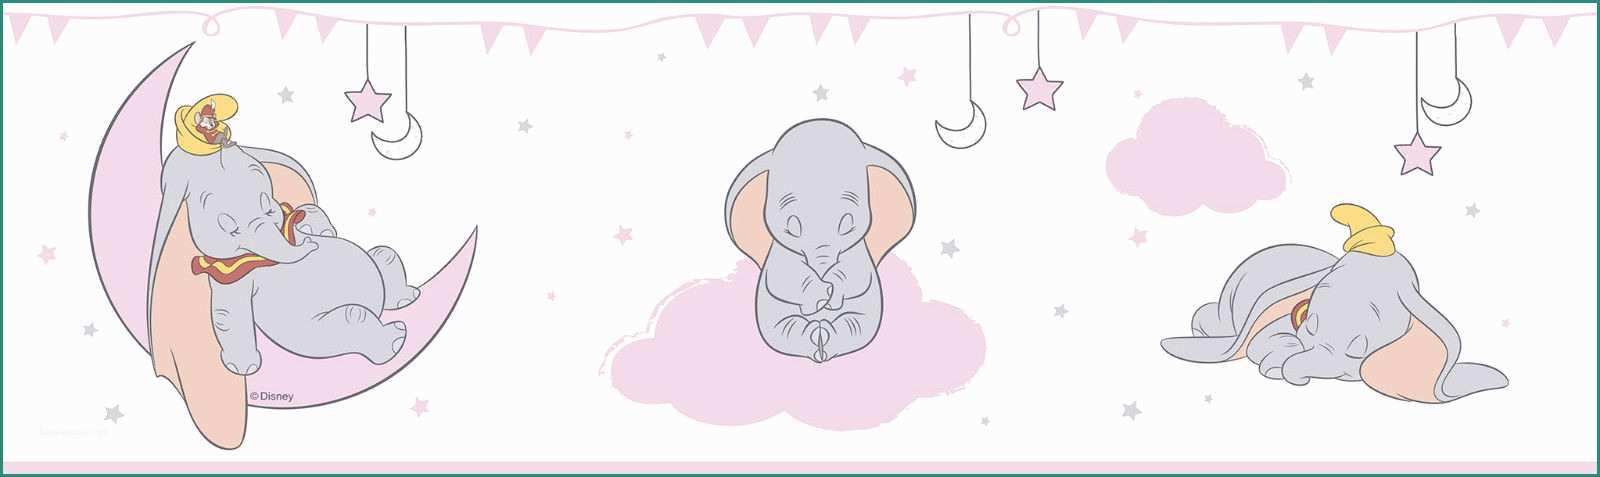 Bordi Adesivi Per Pareti Camerette E Bordi Adesivi Per Camerette Disney Dumbo Elefantino Rosa E